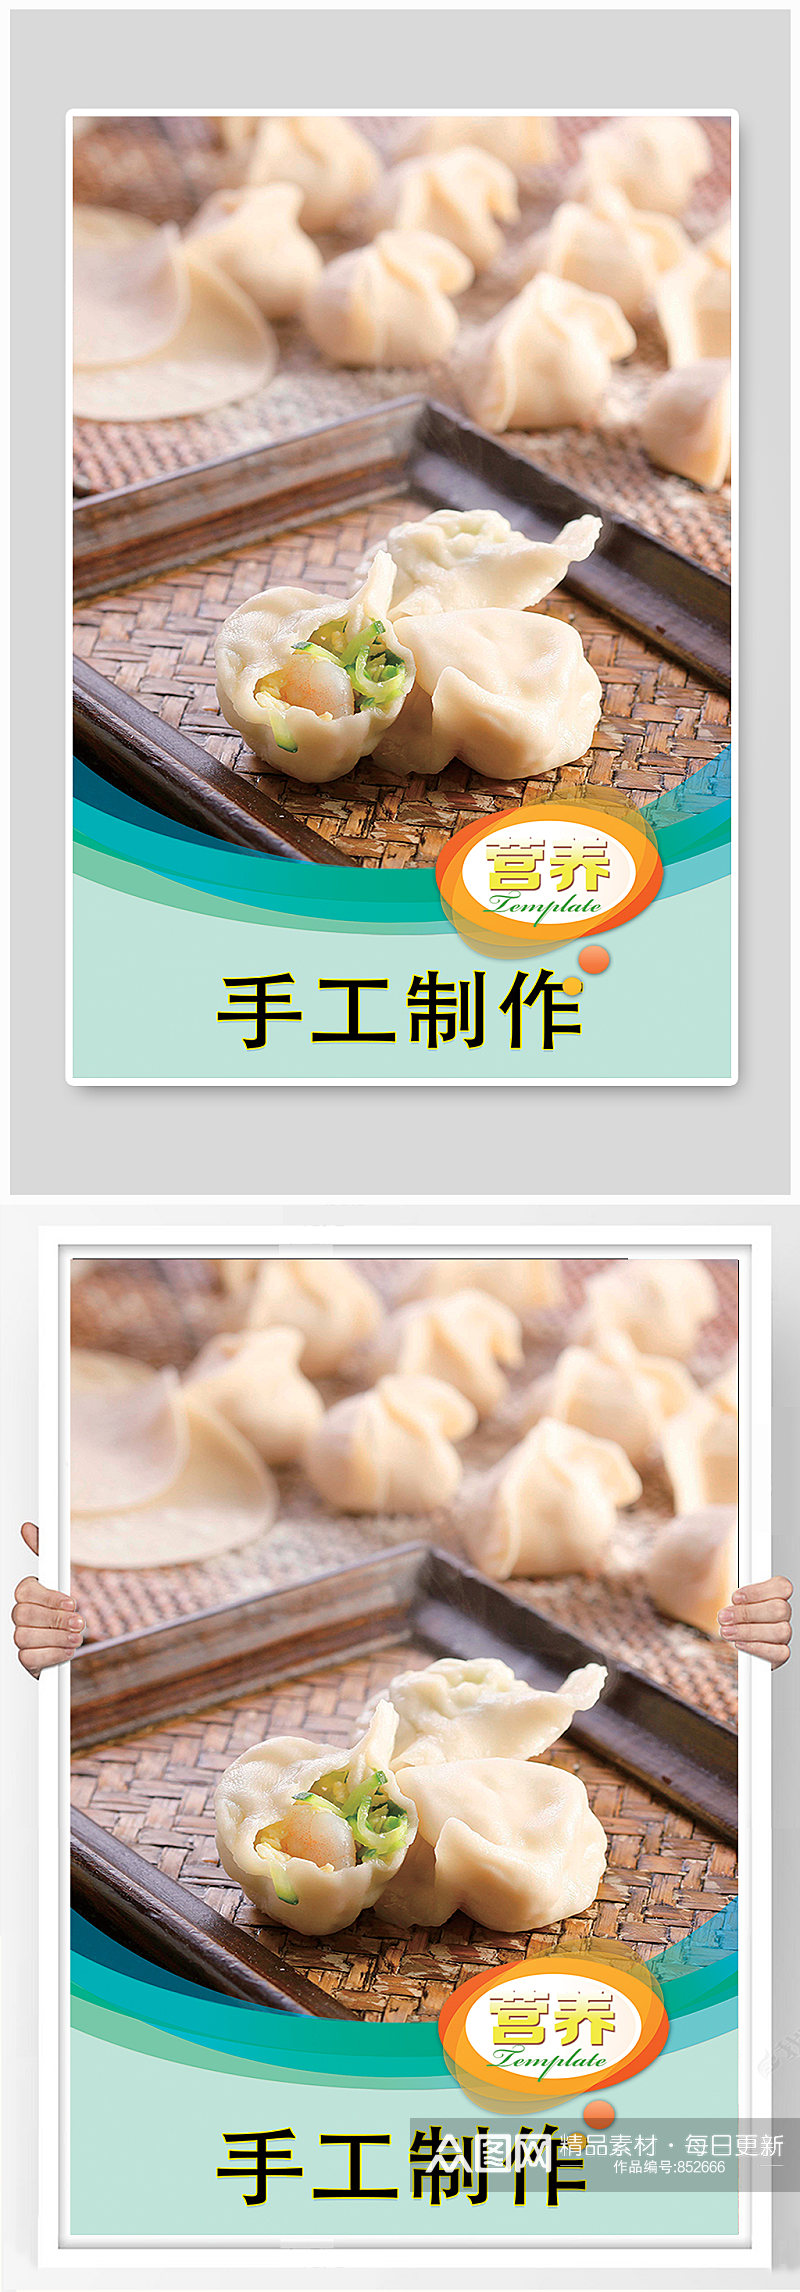 手工水饺美食海报素材